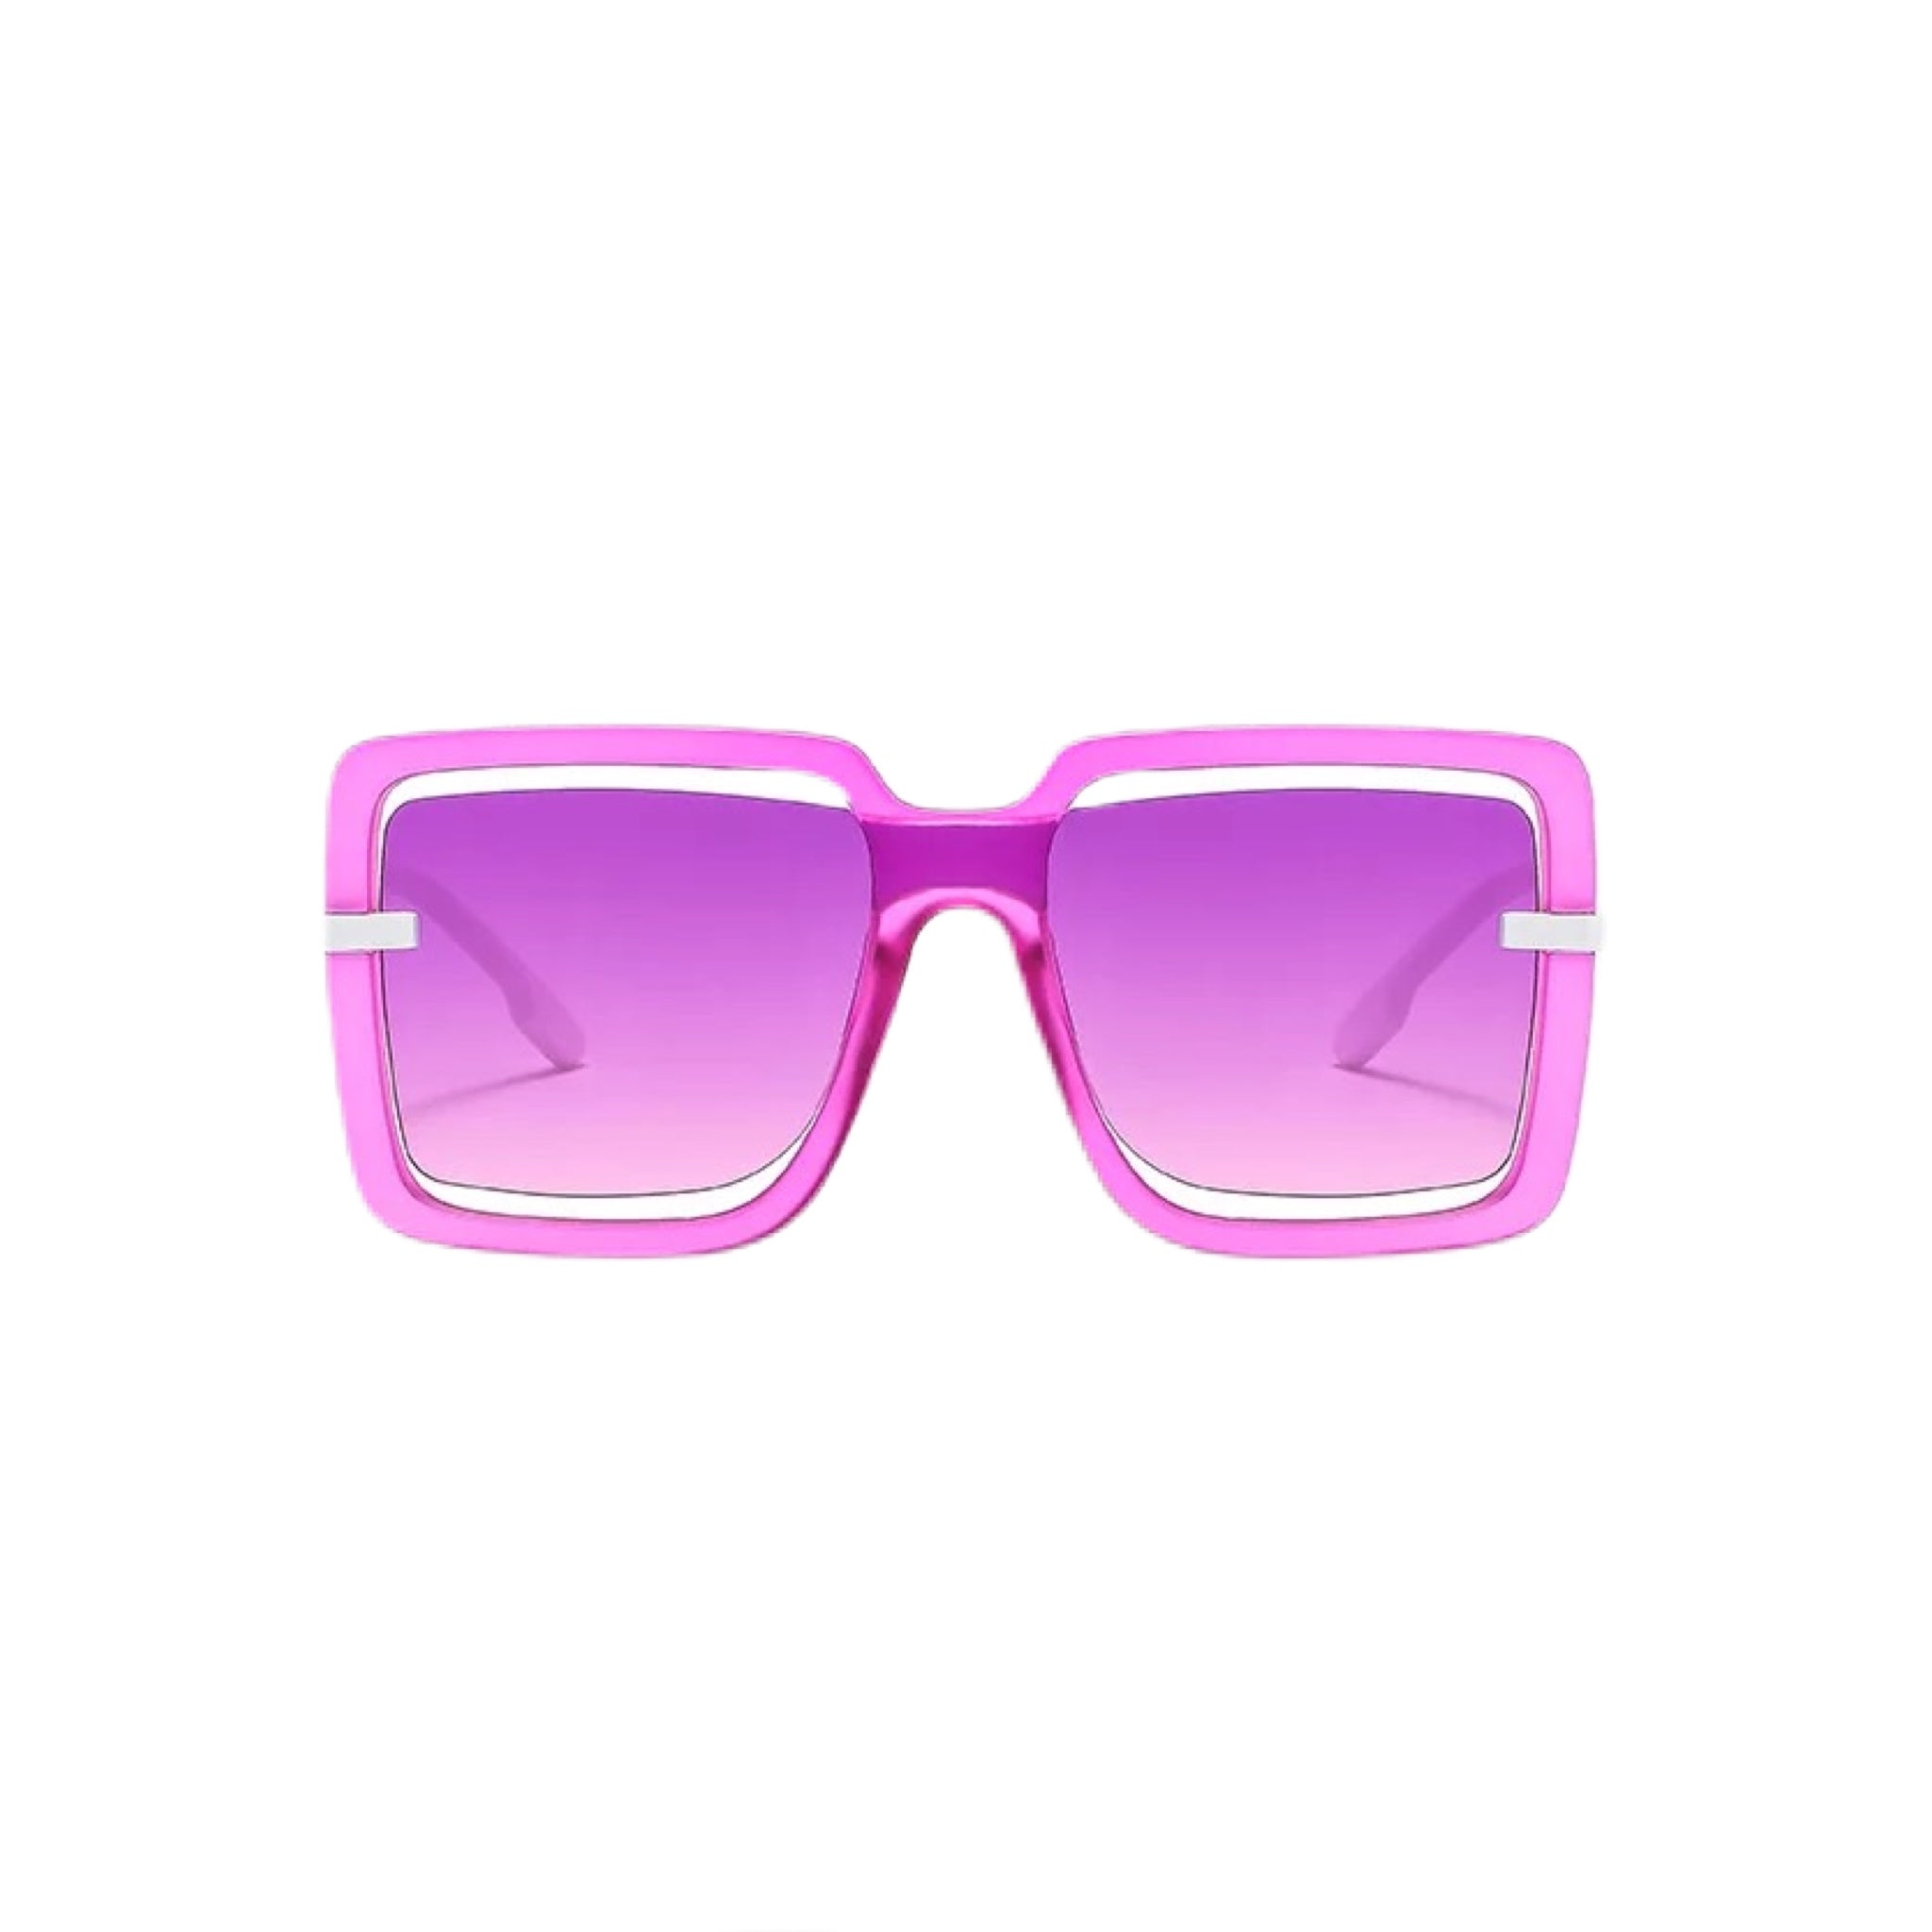 GOLDxTEAL stylish purple sunglasses.